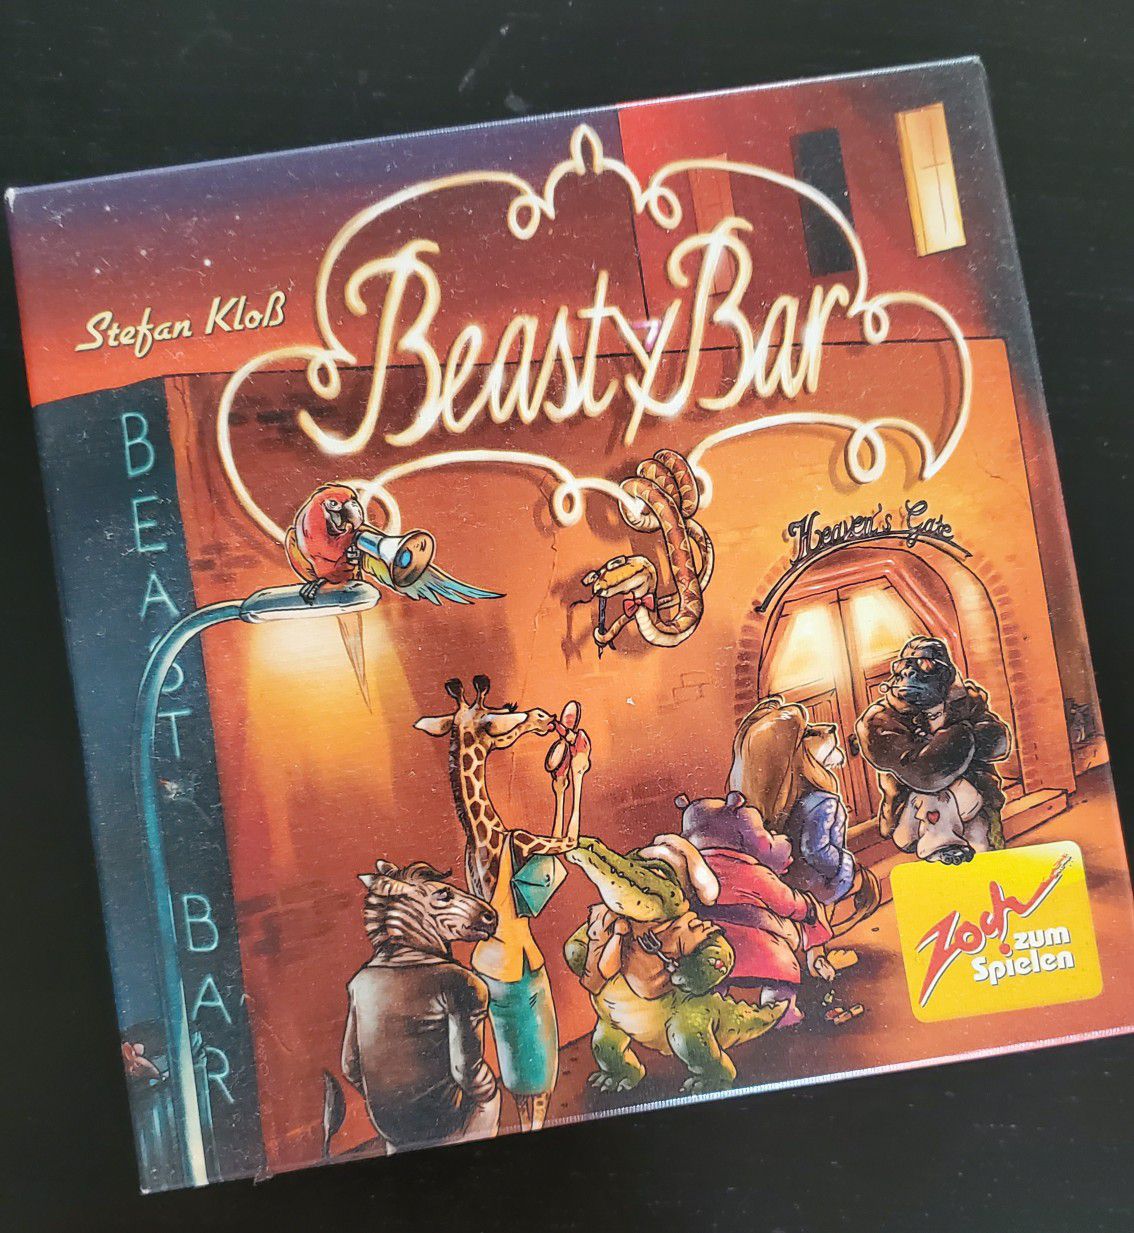 Beasty Bar board game